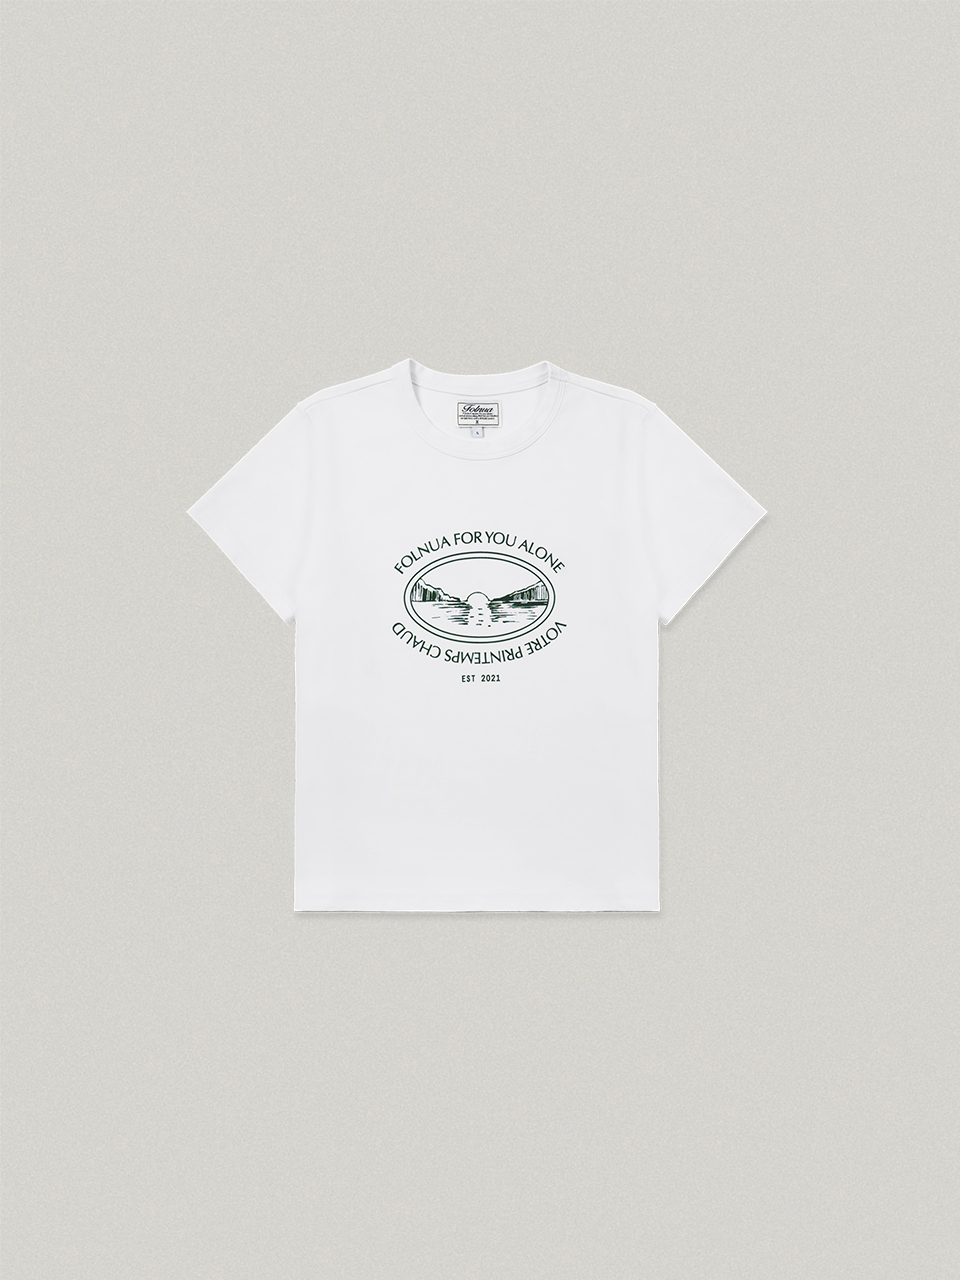 Sunrise Half Sleeve T-shirt - white선라이즈 하프 슬리브 티셔츠